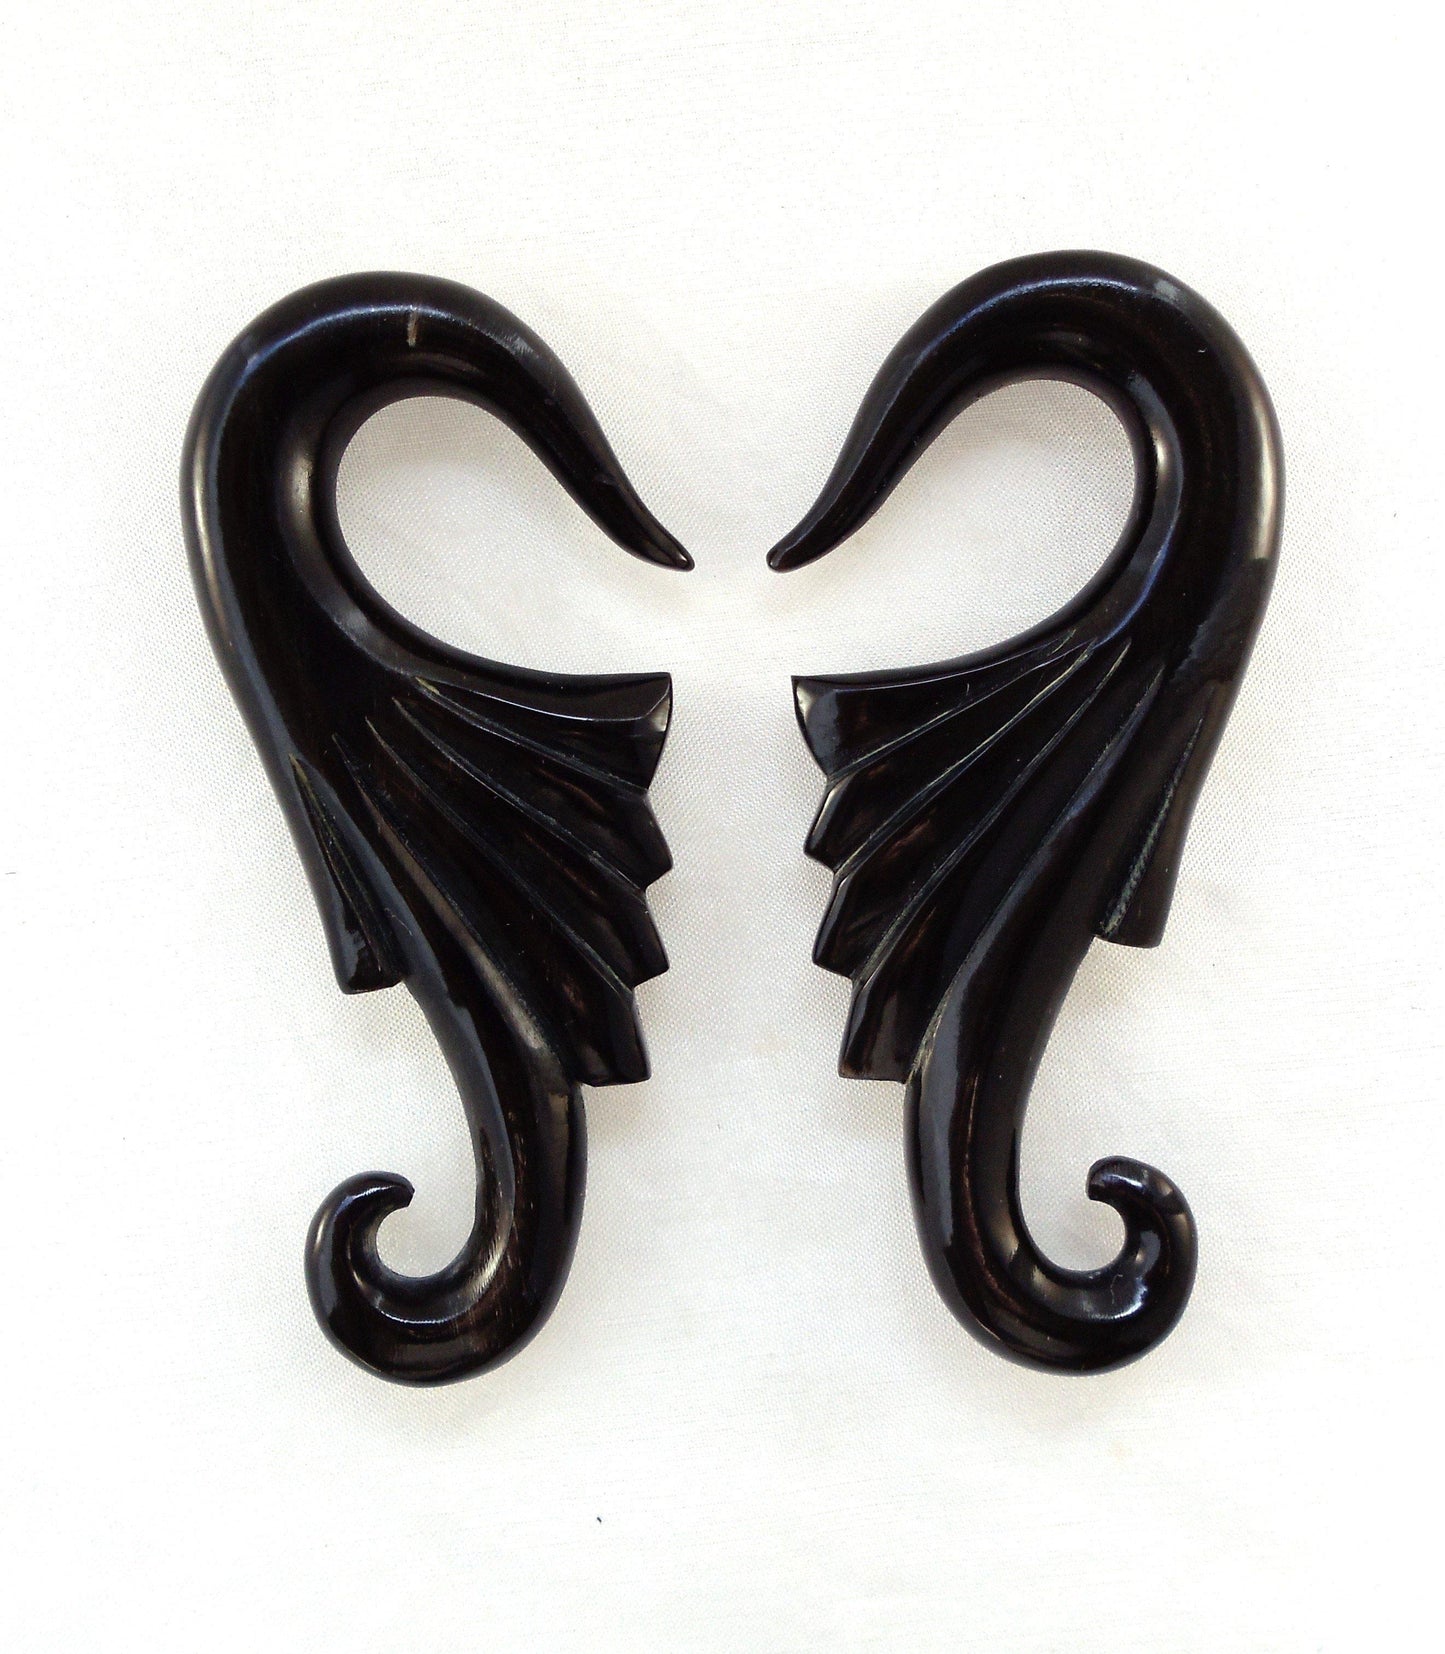 Body Jewelry :|: Wings, black. 0 gauge earrings. Piercing Jewelry